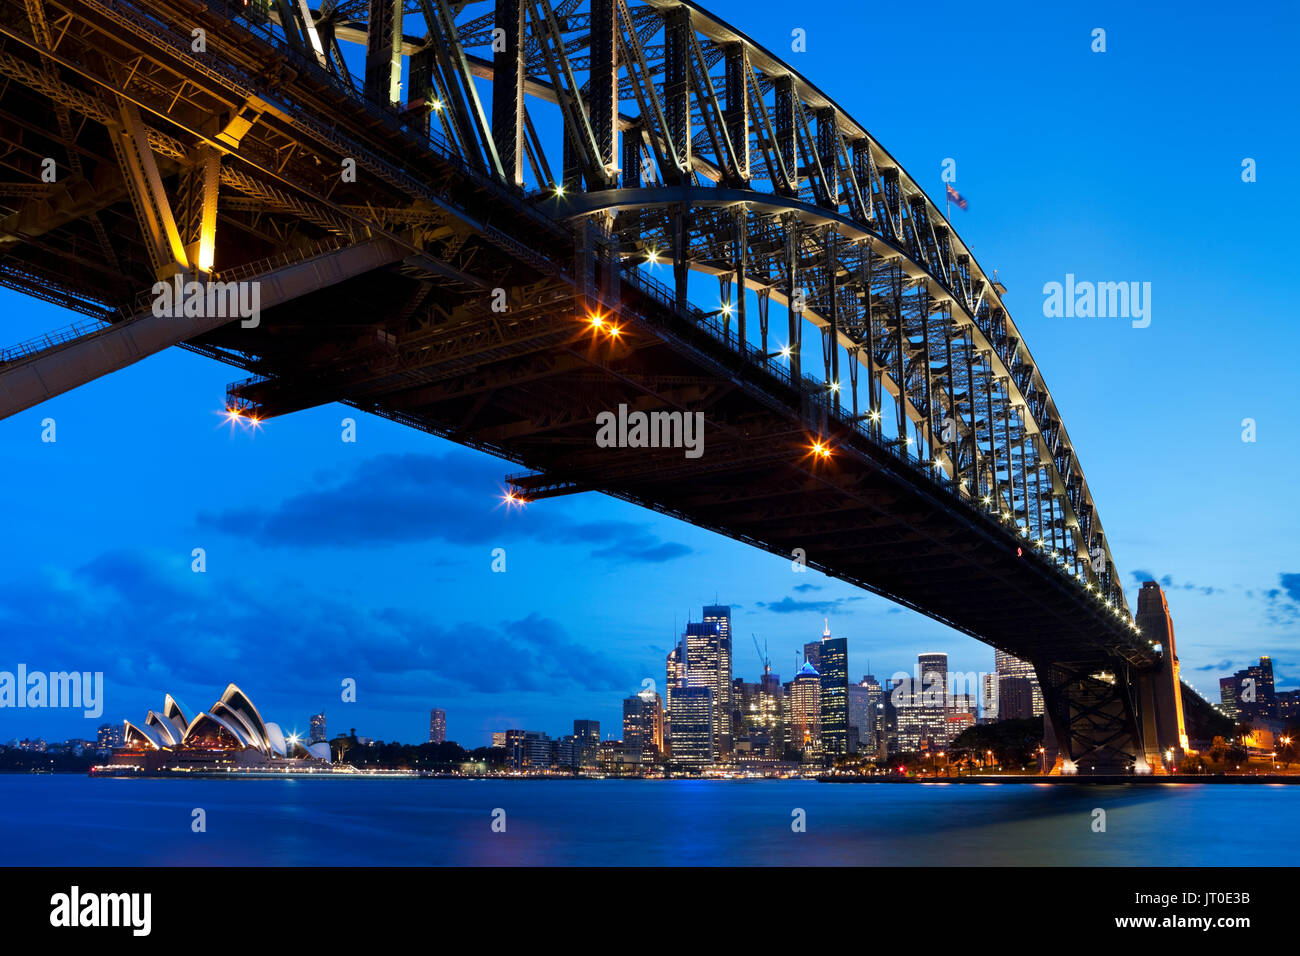 Le Harbour Bridge, l'Opéra de Sydney et le quartier central des affaires de Sydney. Photographié au crépuscule. Banque D'Images